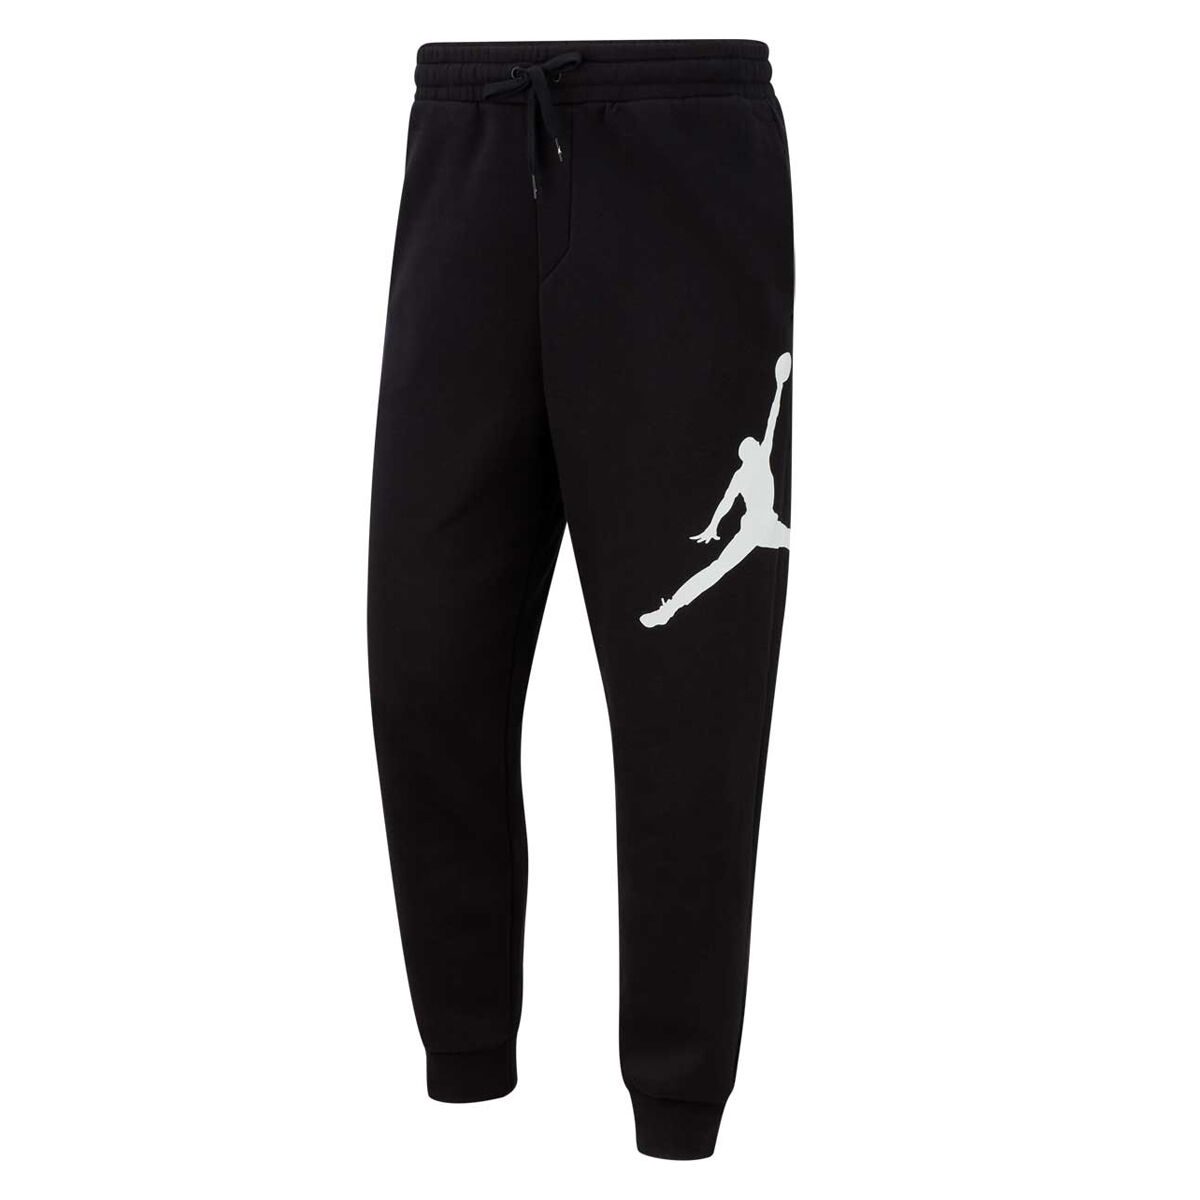 jumpman jogging pants